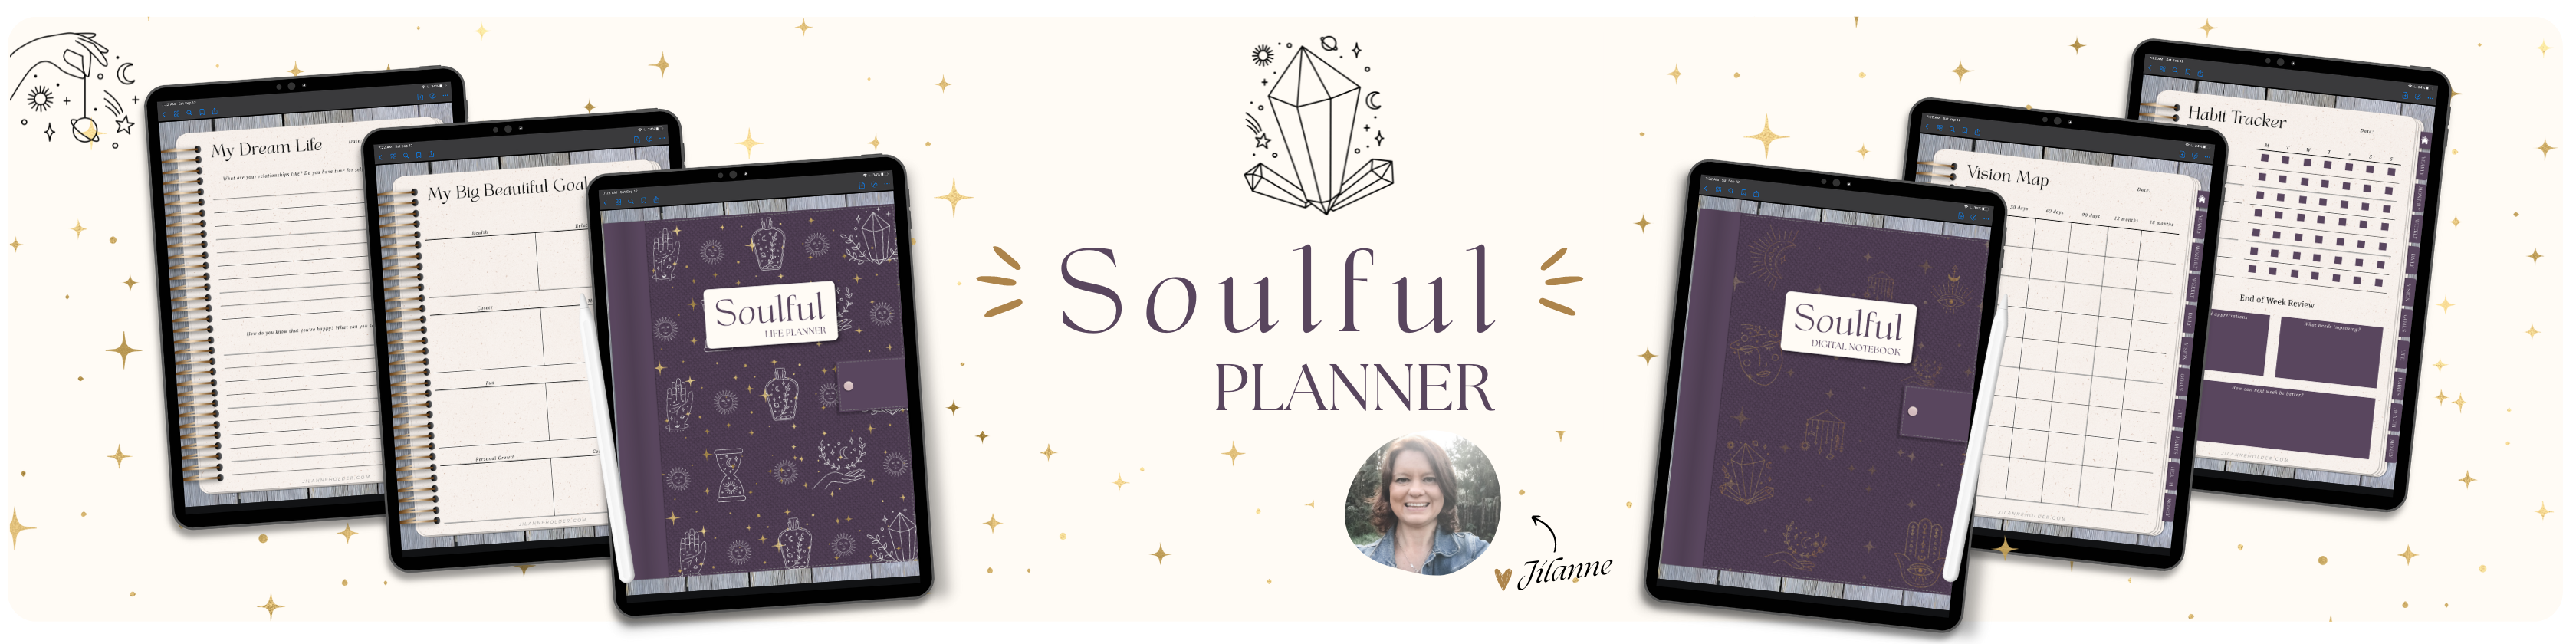 Jilanne Holder | Soulful Planner